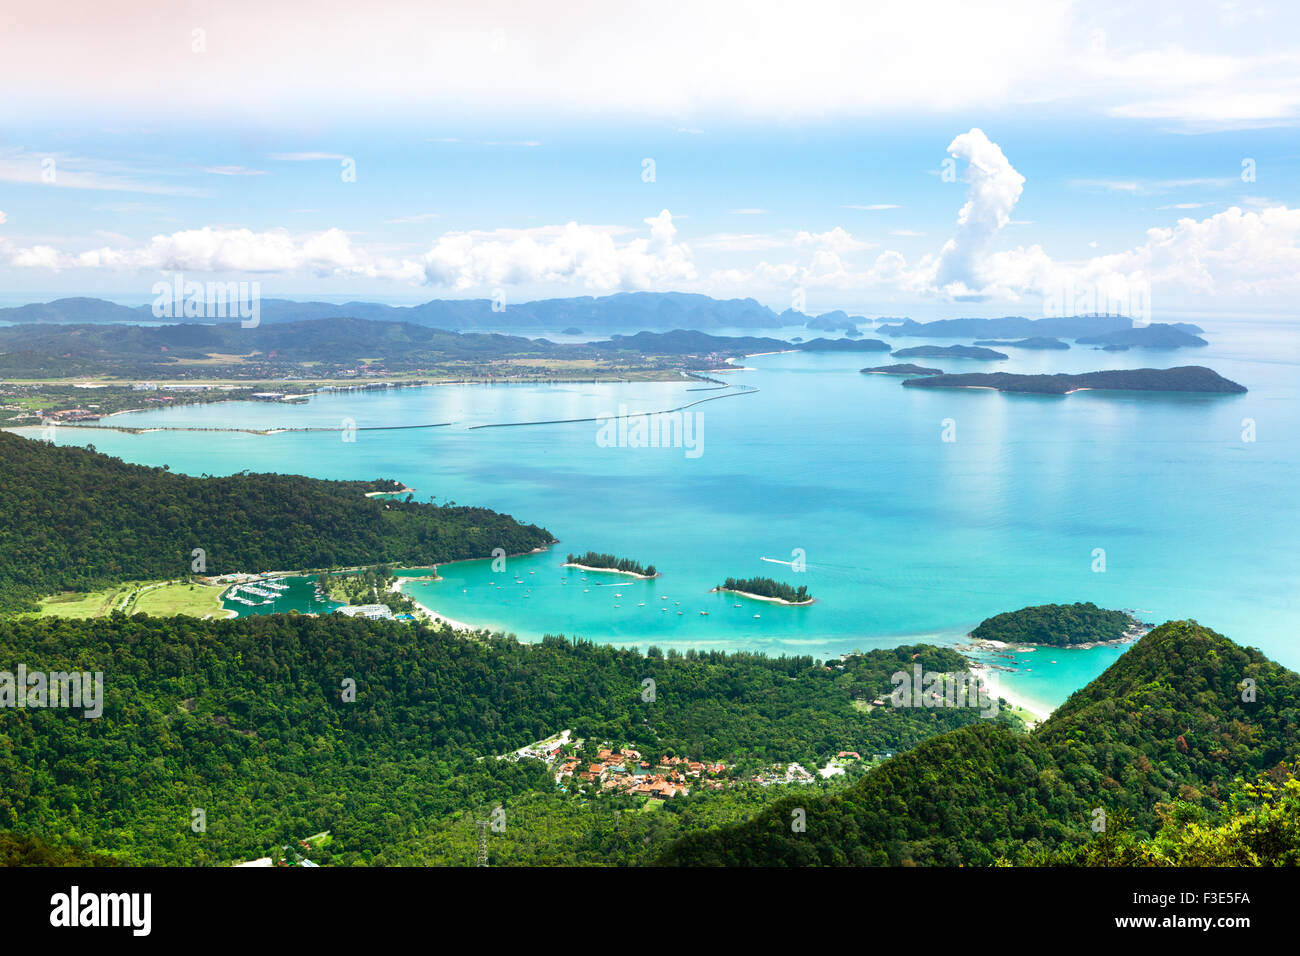 Vue de l'île de Langkawi à partir de la plate-forme d'observation. La Malaisie. Banque D'Images